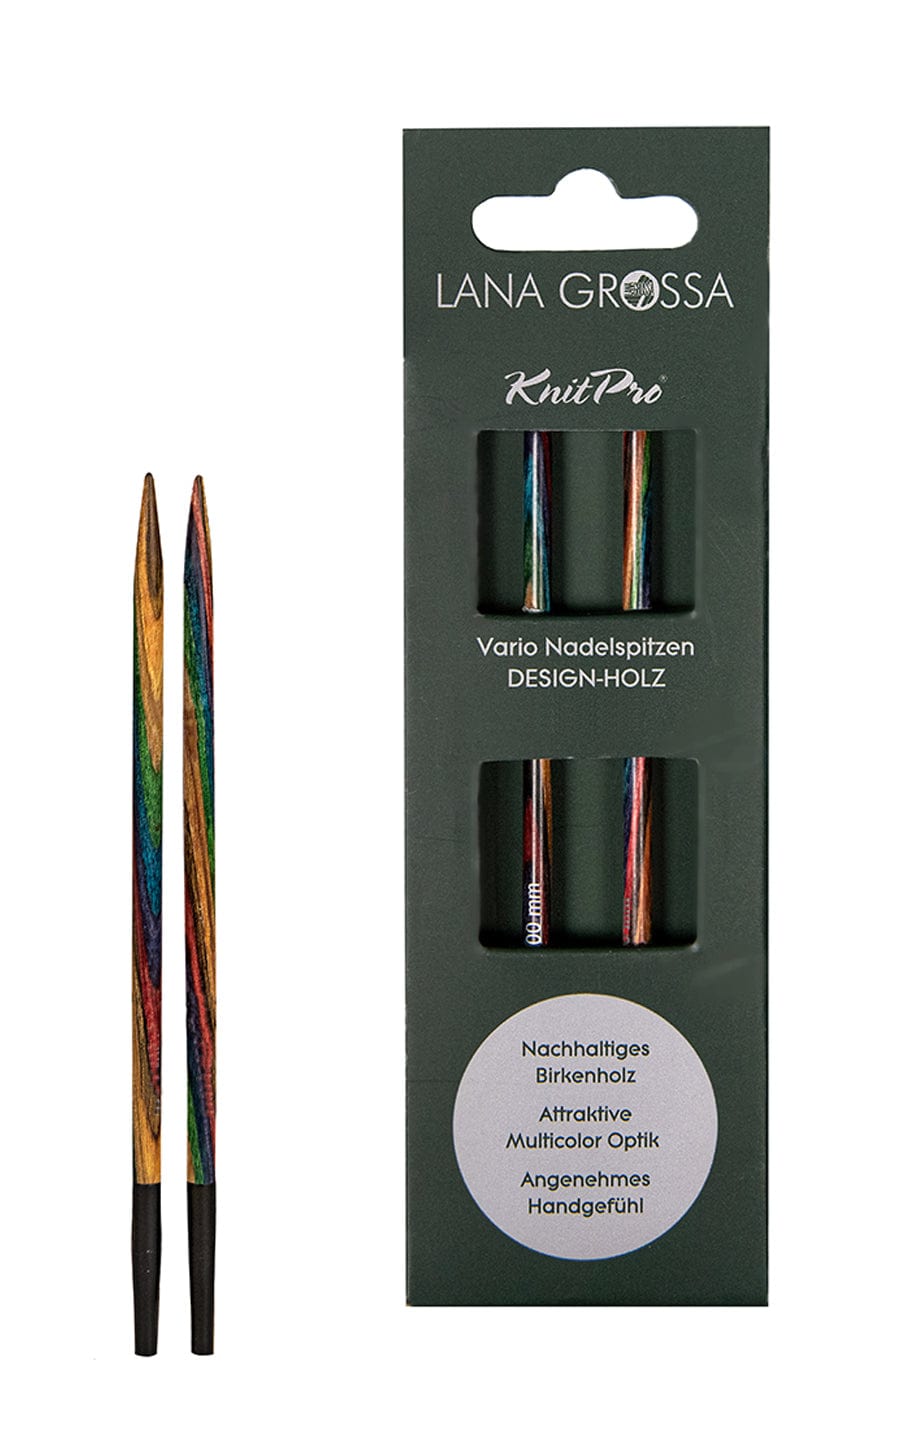 Kurze 3,0 mm Nadelspitze Vario aus Holz - neue Verpackung von LANA GROSSA jetzt online kaufen bei OONIQUE